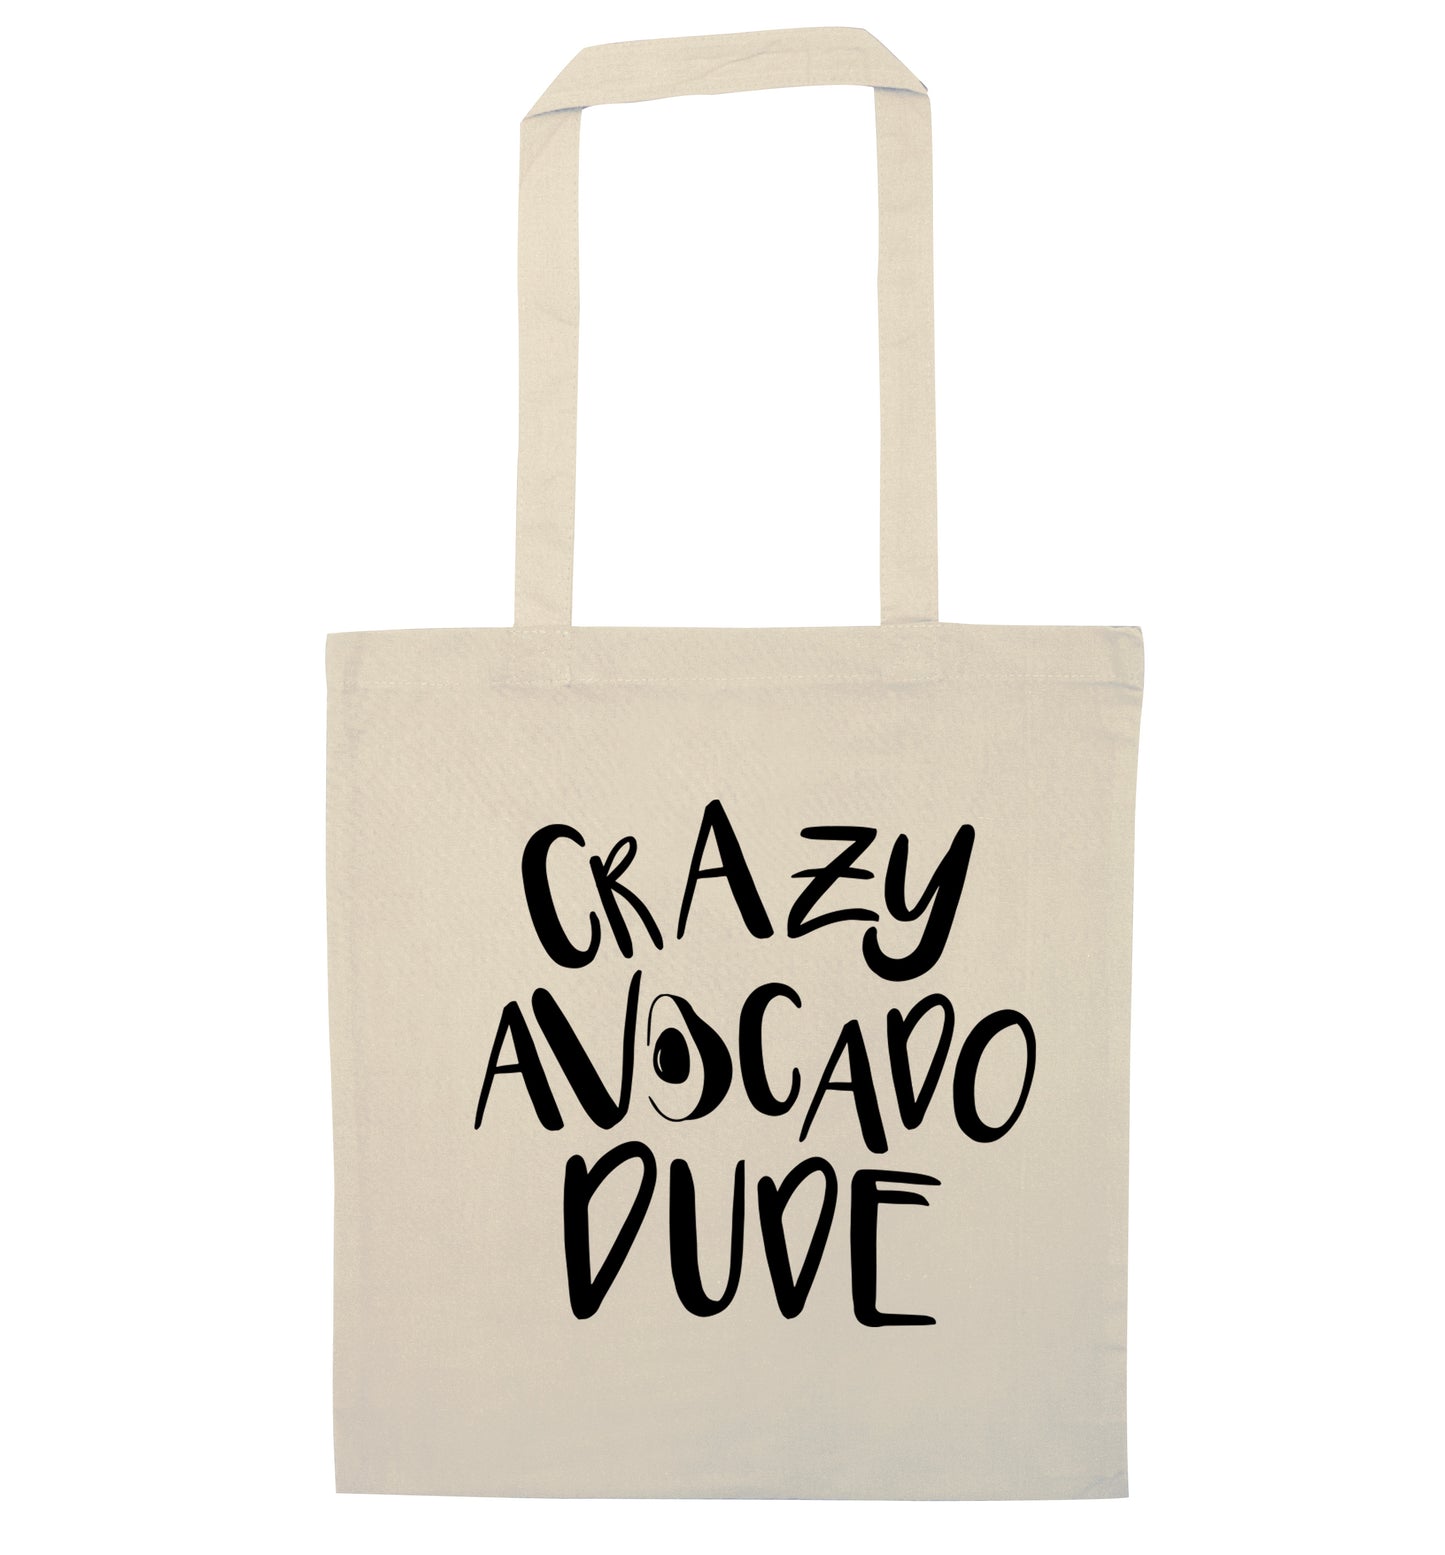 Crazy avocado dude natural tote bag